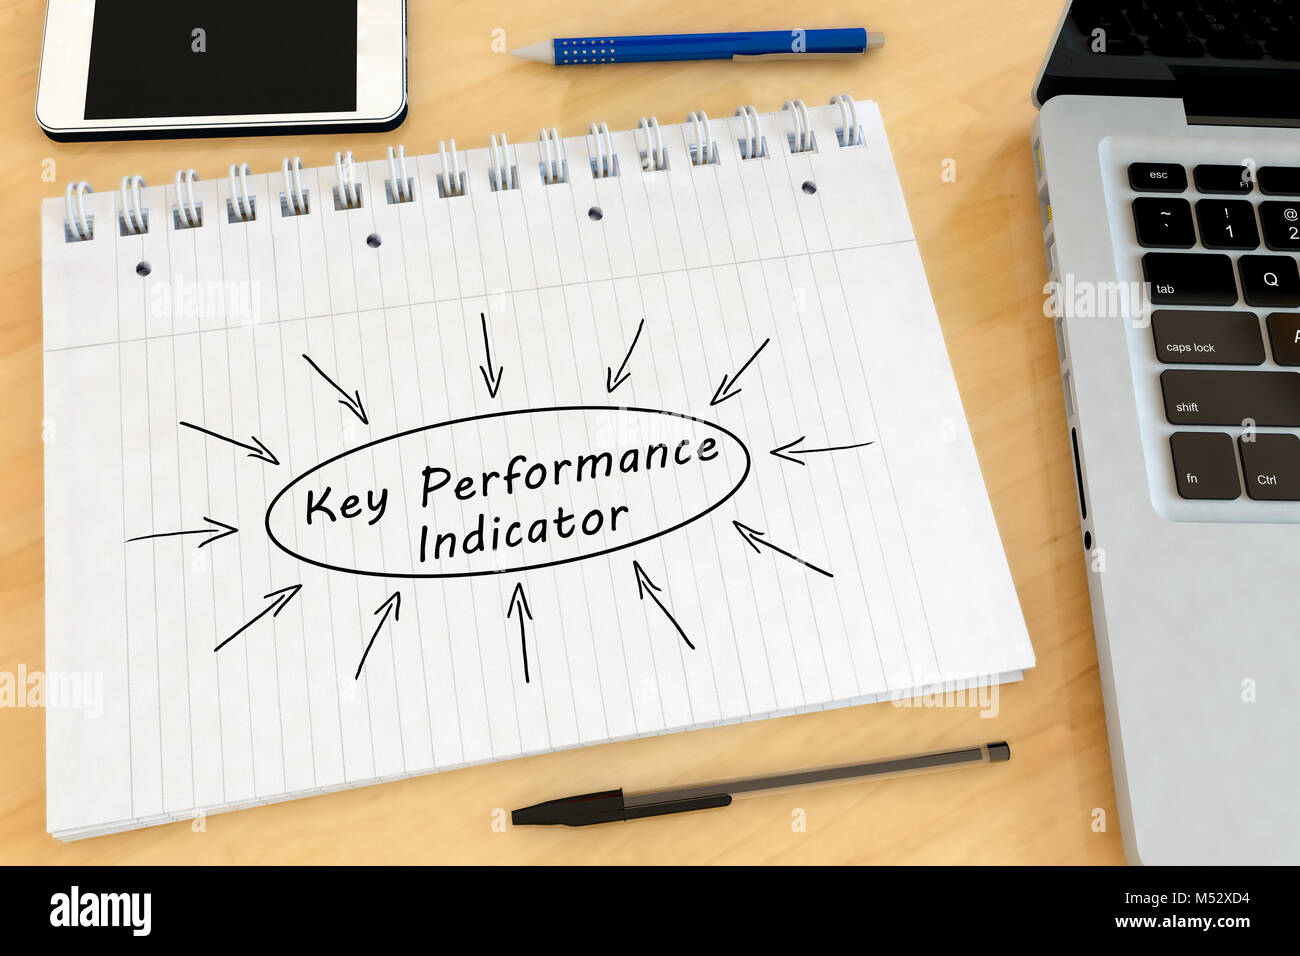 Key Performance Indicator Stock Photo